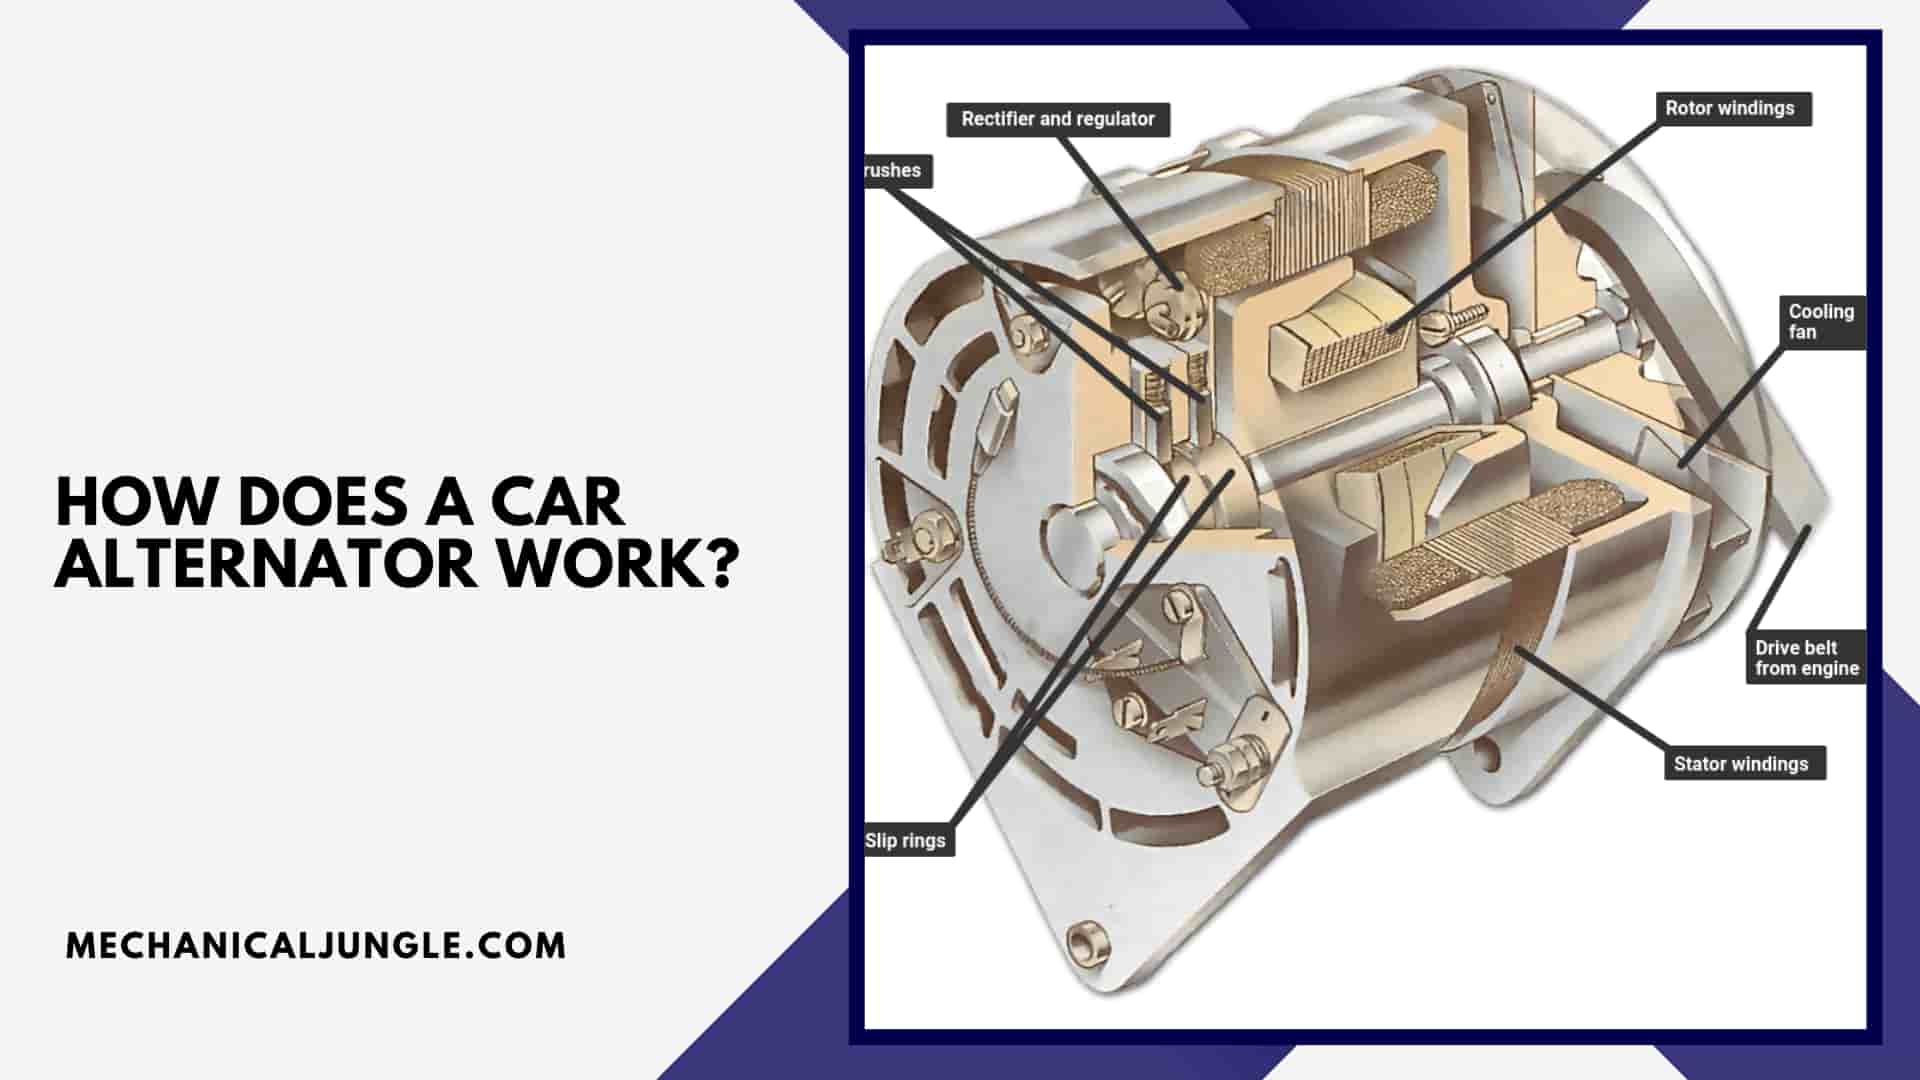 How Does a Car Alternator Work?